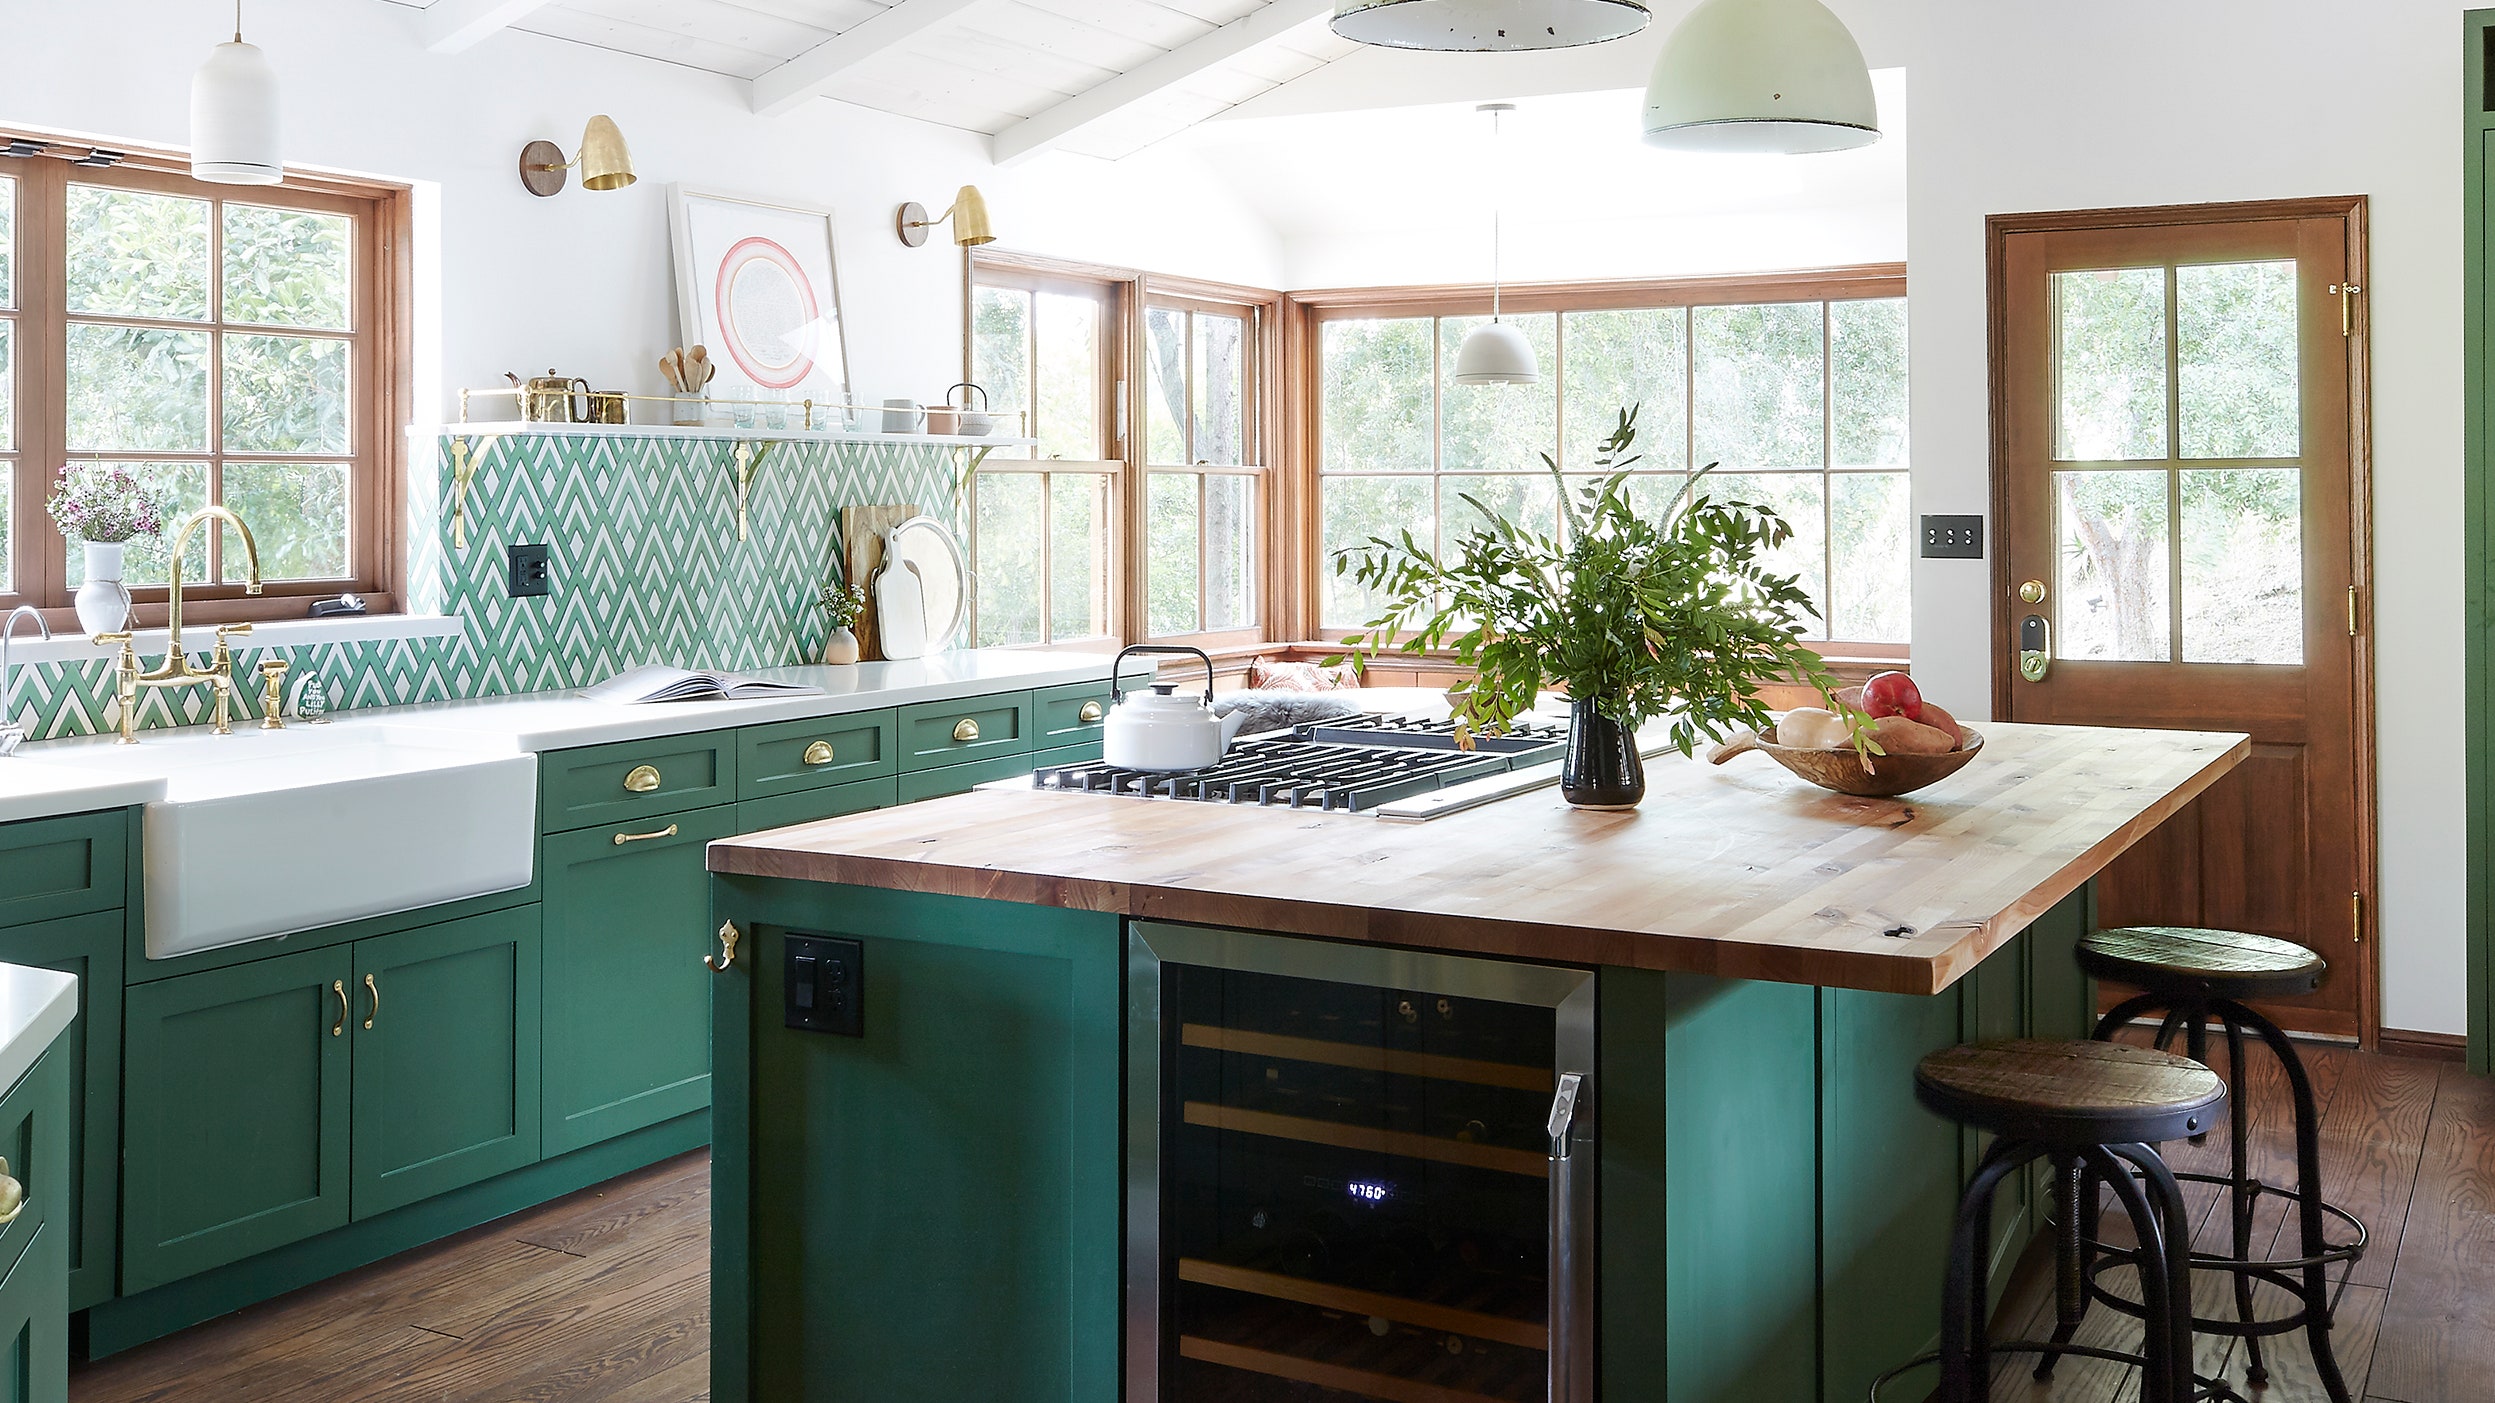 Eine mutige grüne Küche - ein lebendiges und inspirierendes Interieur